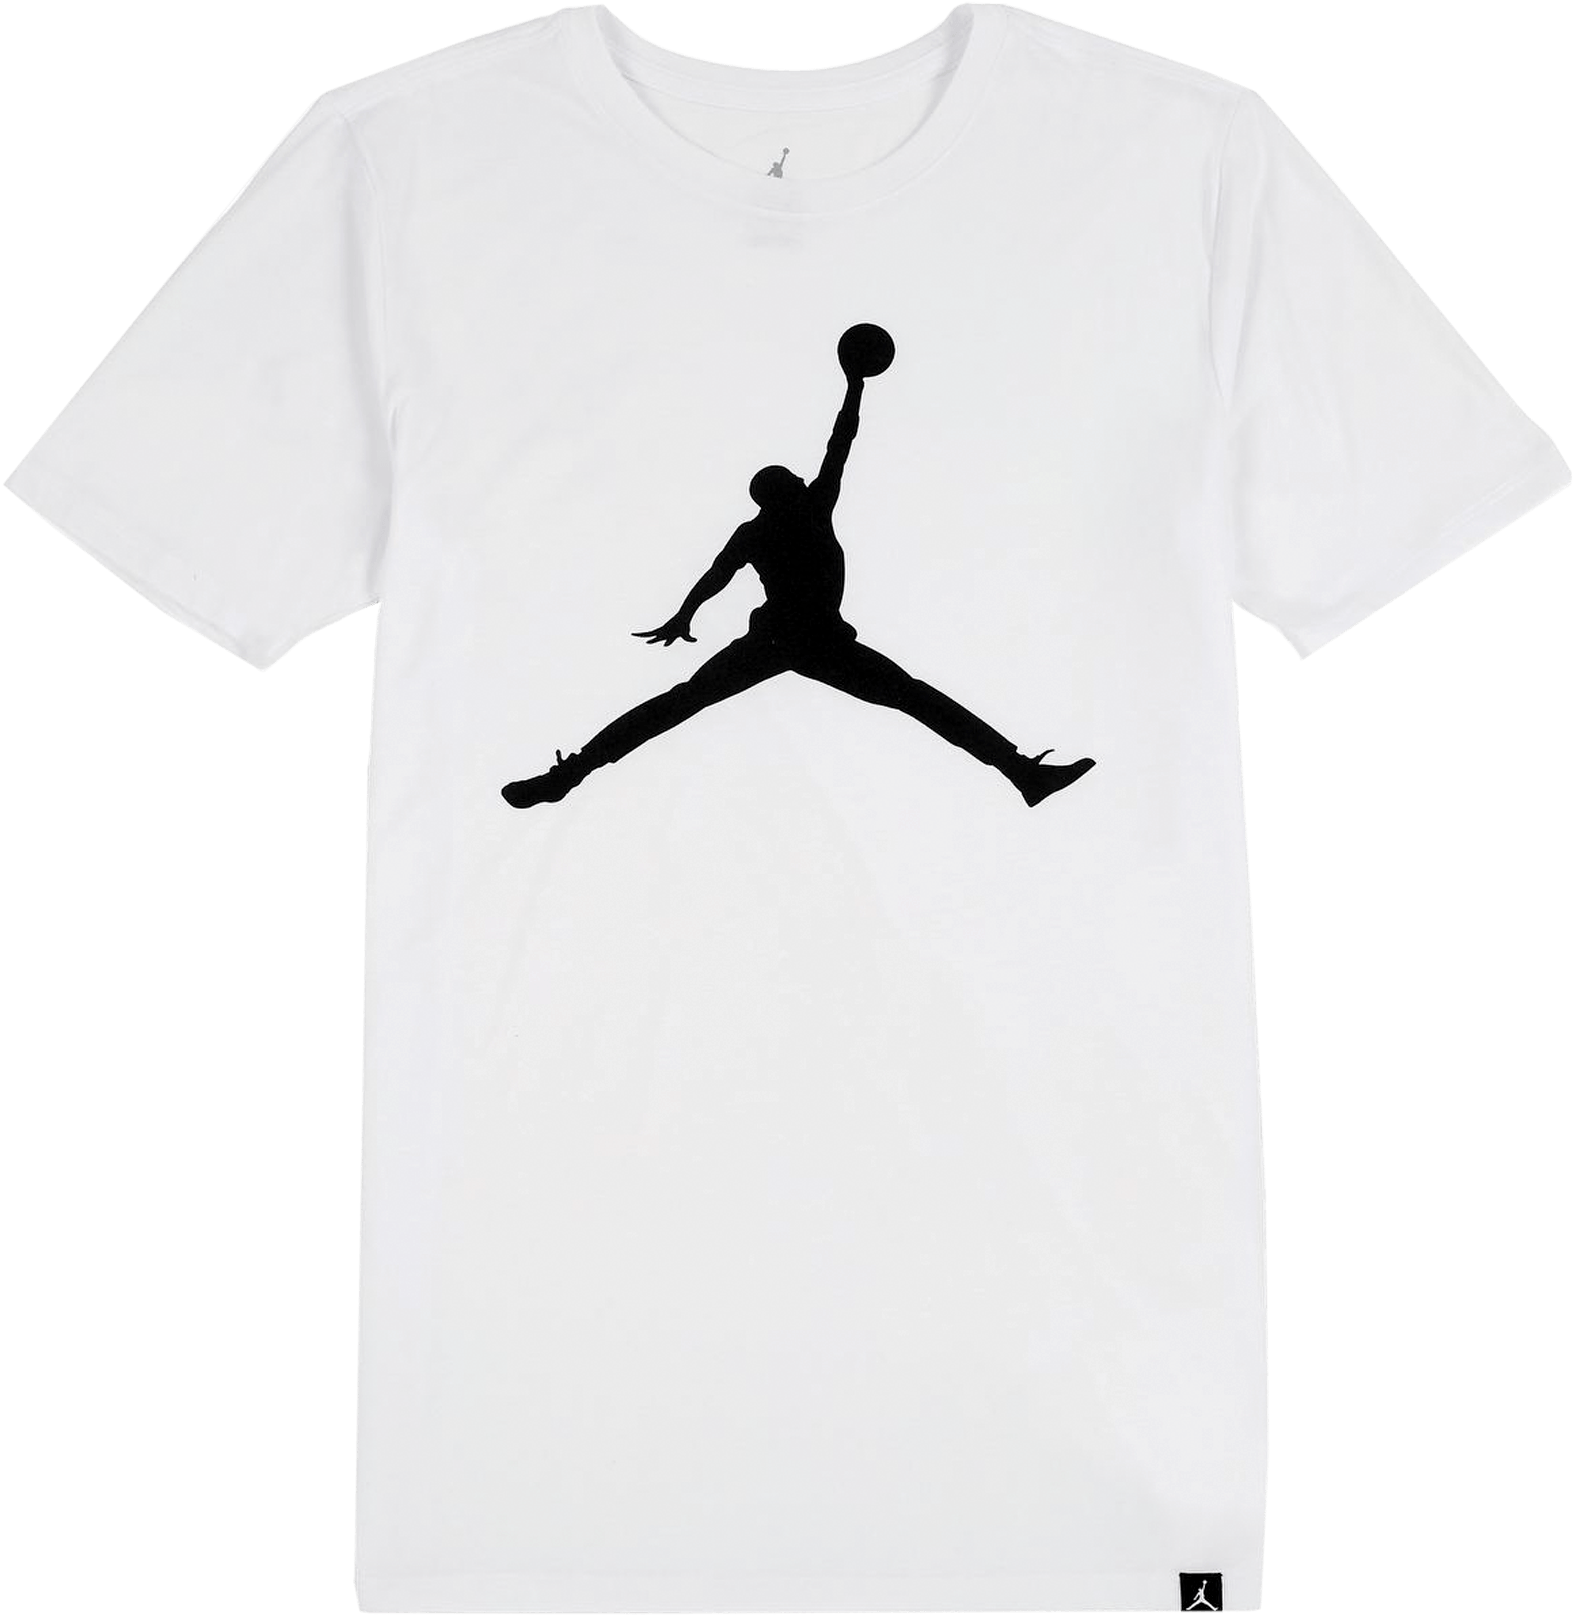 Iconic Jumpman Logo Tee - Air Jordan T Shirt Design White (2000x2000), Png Download